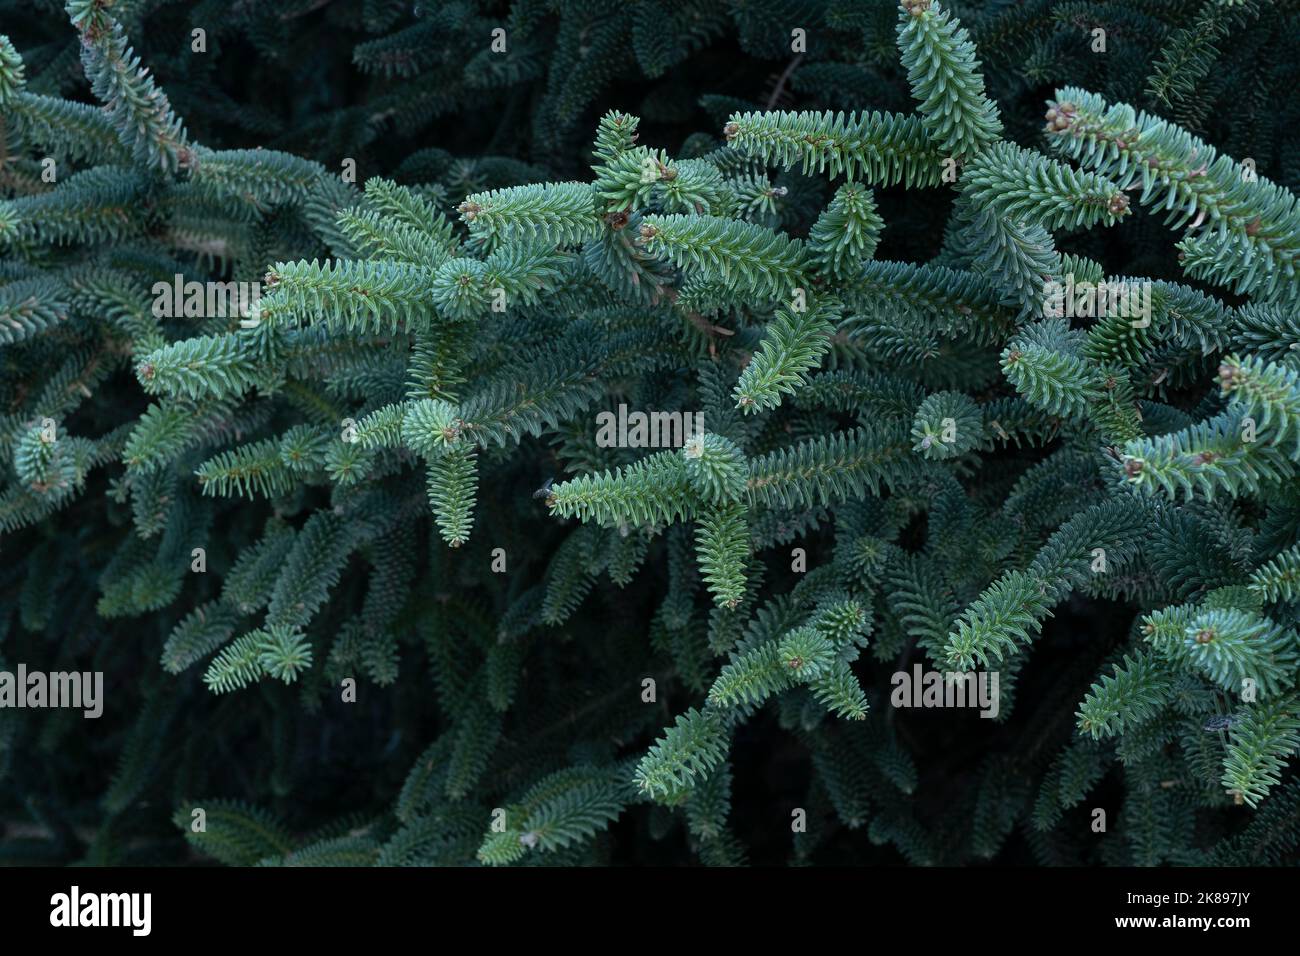 Pinsapo tree detail,  (Abies pinsapo), in Sierra de las Nieves National Park, Malaga, Spain Stock Photo